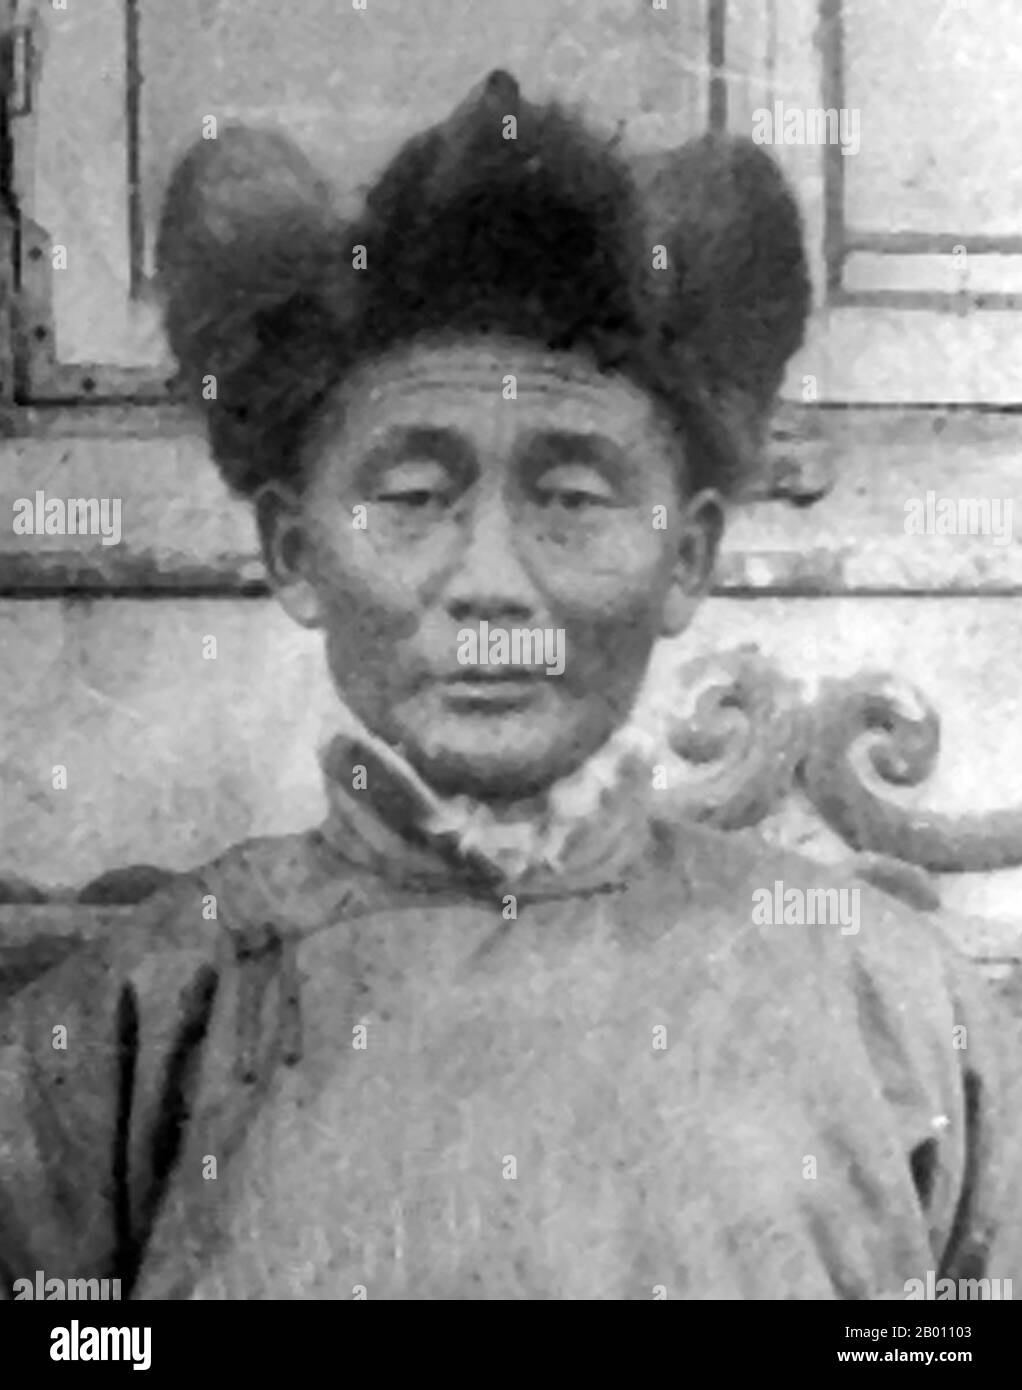 Mongolei: Soliin Danzan (1885 – 1924), mongolischer Revolutionär und Vorsitzender des Zentralkomitees der Mongolischen Volkspartei, 1924. Soliin Danzan (1885 – 1924) war ein mongolischer Revolutionär und Vorsitzender des Zentralkomitees der Mongolischen Volkspartei. Danzan arbeitete als Zollbeamter, als er 1919, nach der Auflösung des Unterhauses des parlaments, eine der beiden Gruppen gründete, die sich später zur MPRP zusammenschließen sollten. Er war als einer der ersten sieben Führer der MPRP bekannt. Stockfoto